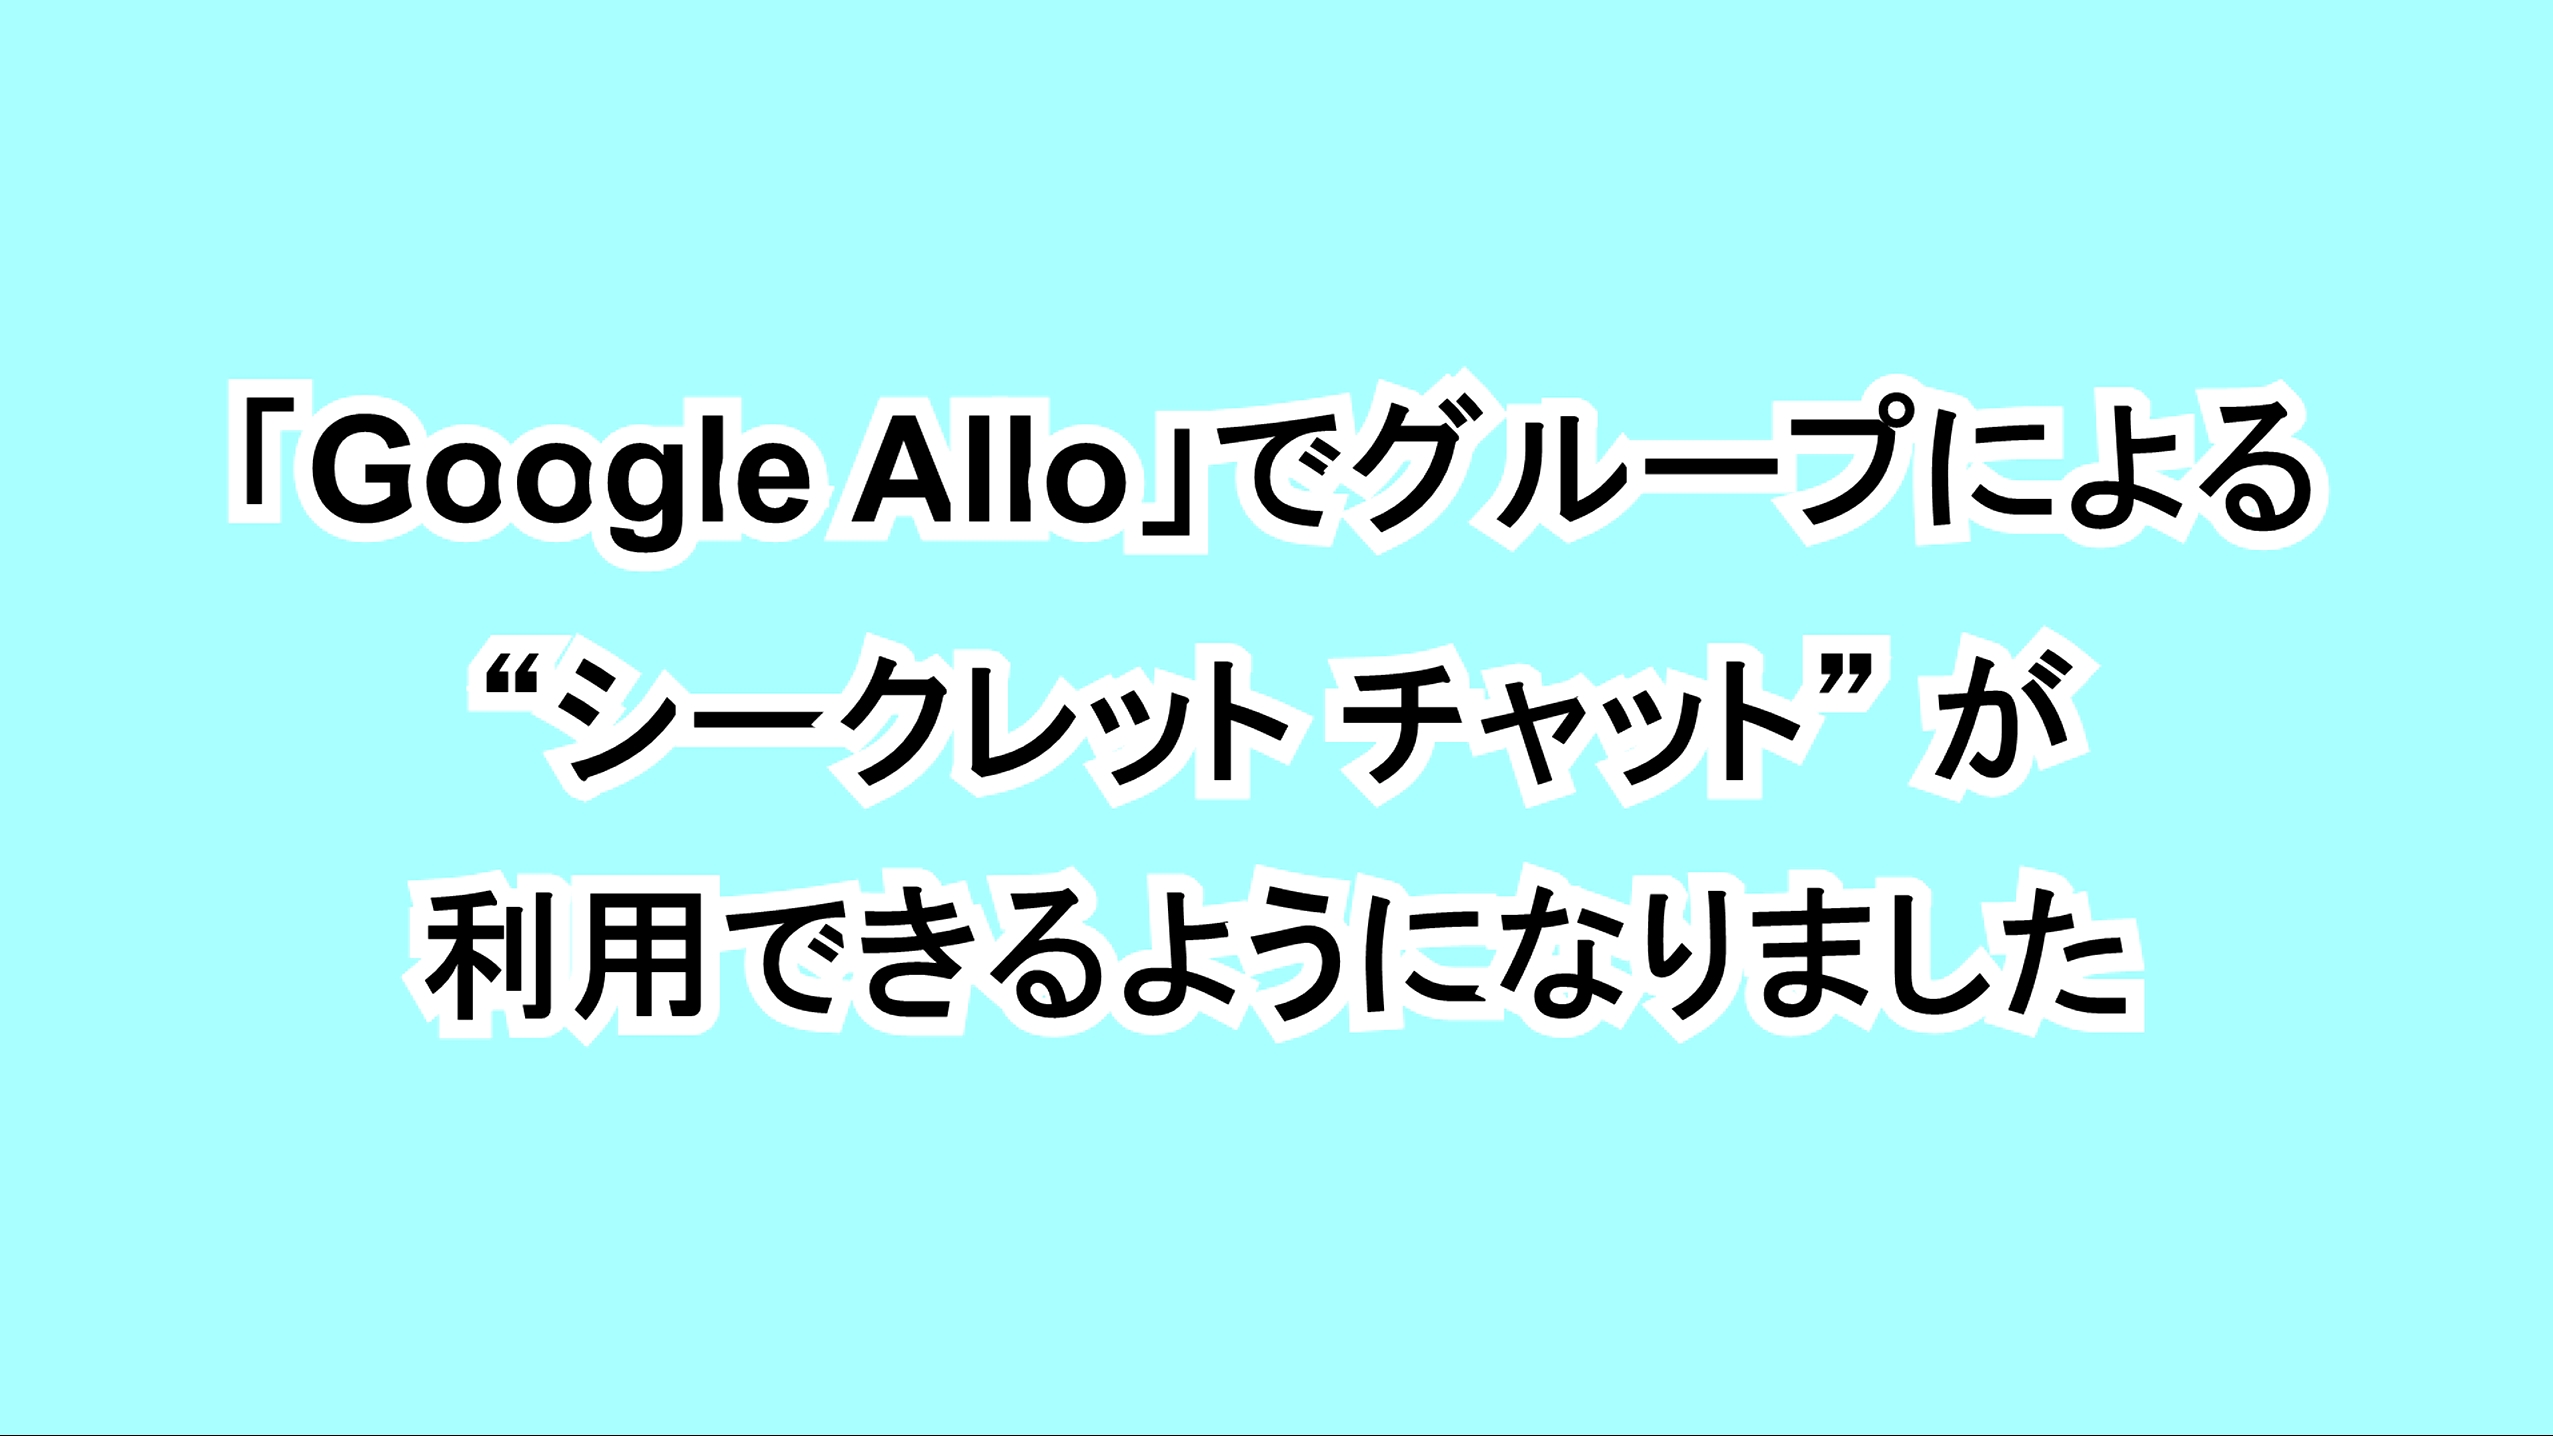 「Google Allo」でグループによる“シークレット チャット”が利用できるようになりました